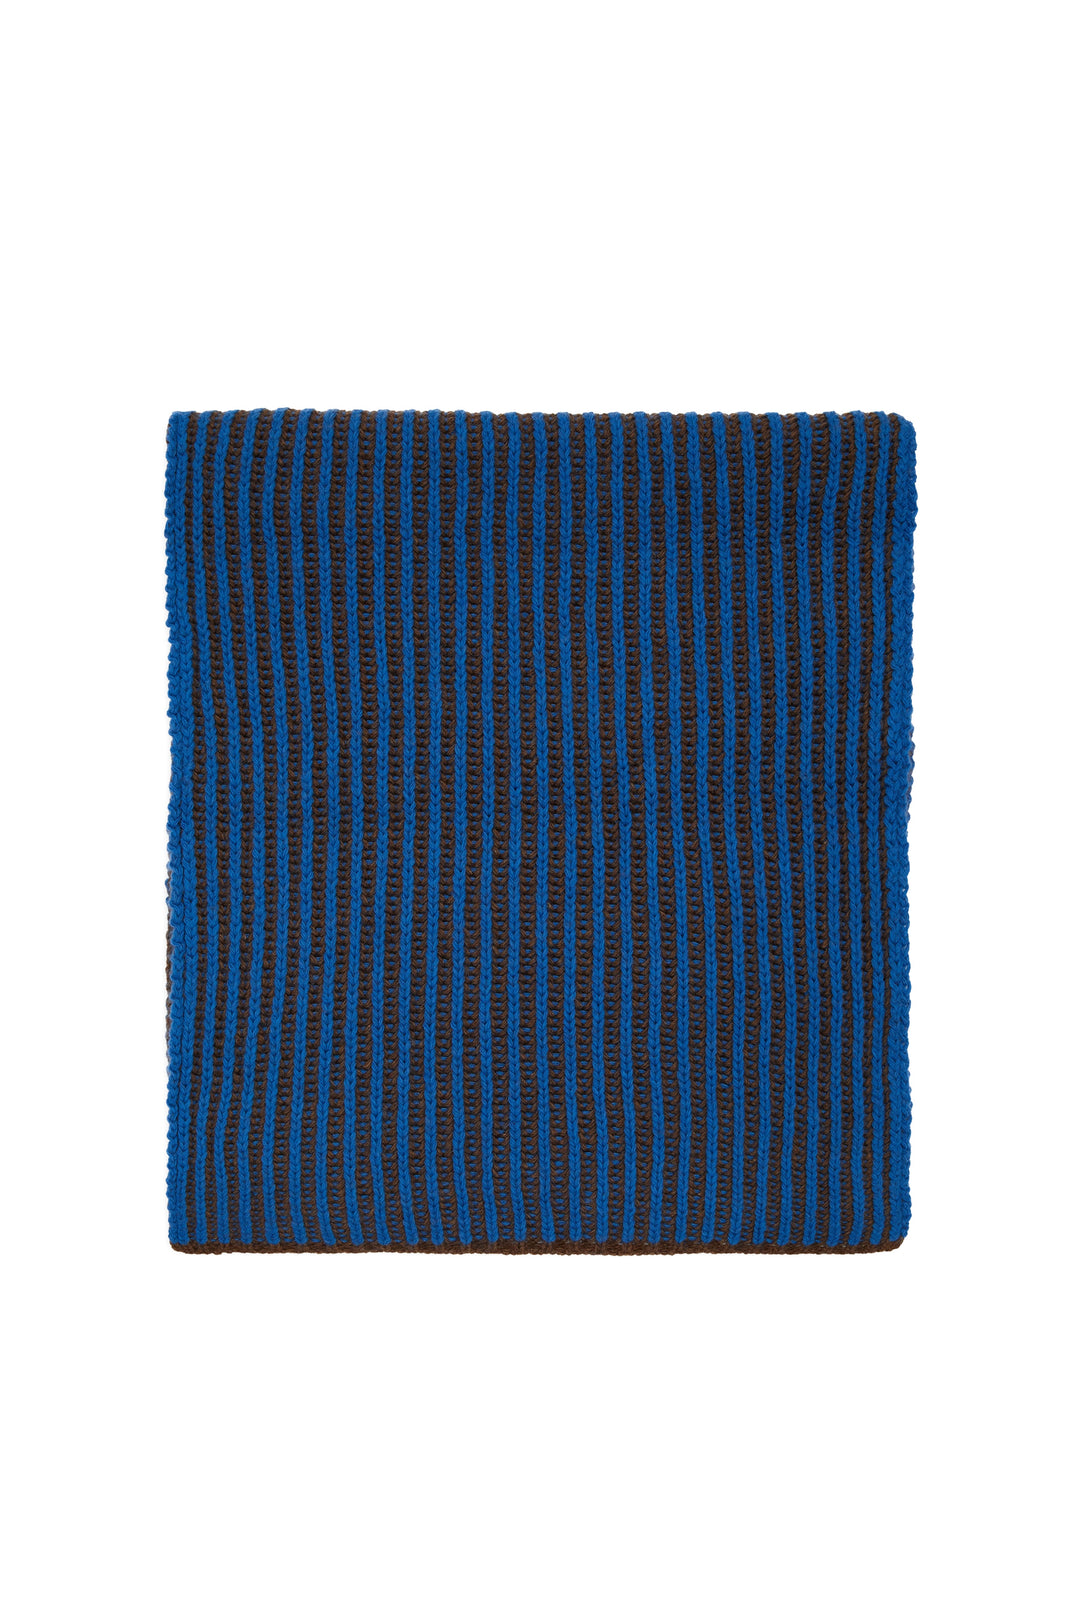 GALLO Sciarpa unisex lana e cashmere azzurra costa inglese vanisé a due colori - Mancinelli 1954